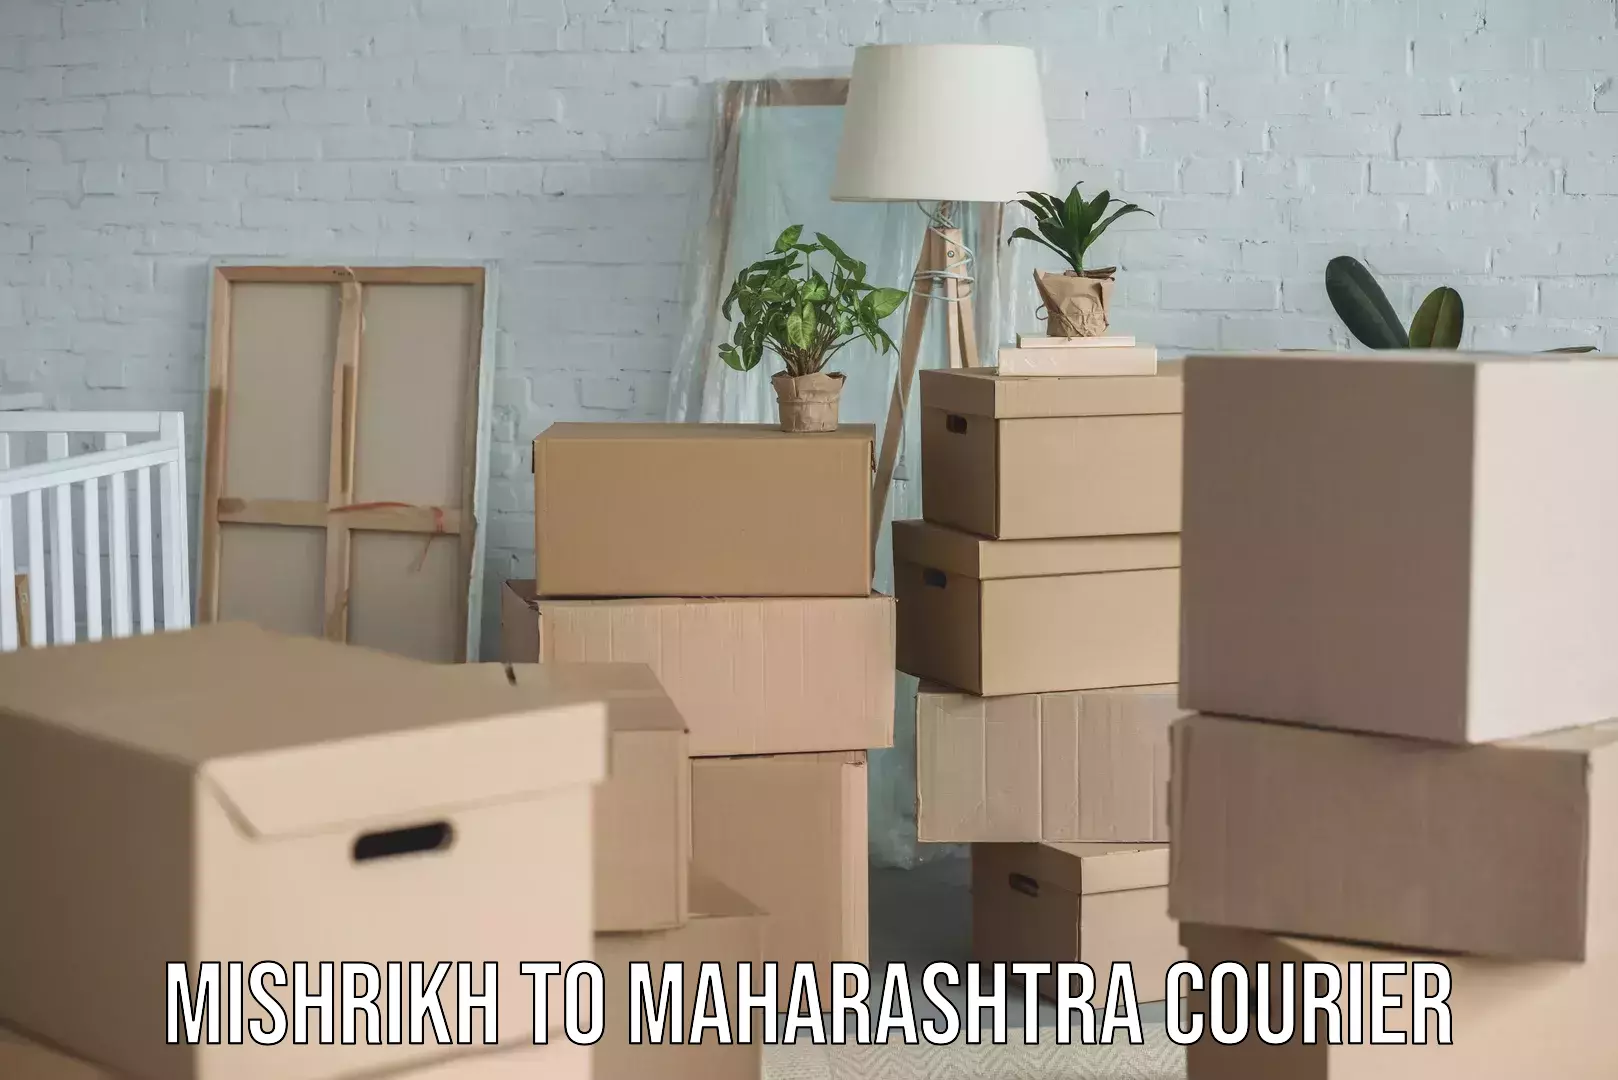 Efficient moving company Mishrikh to Maharashtra